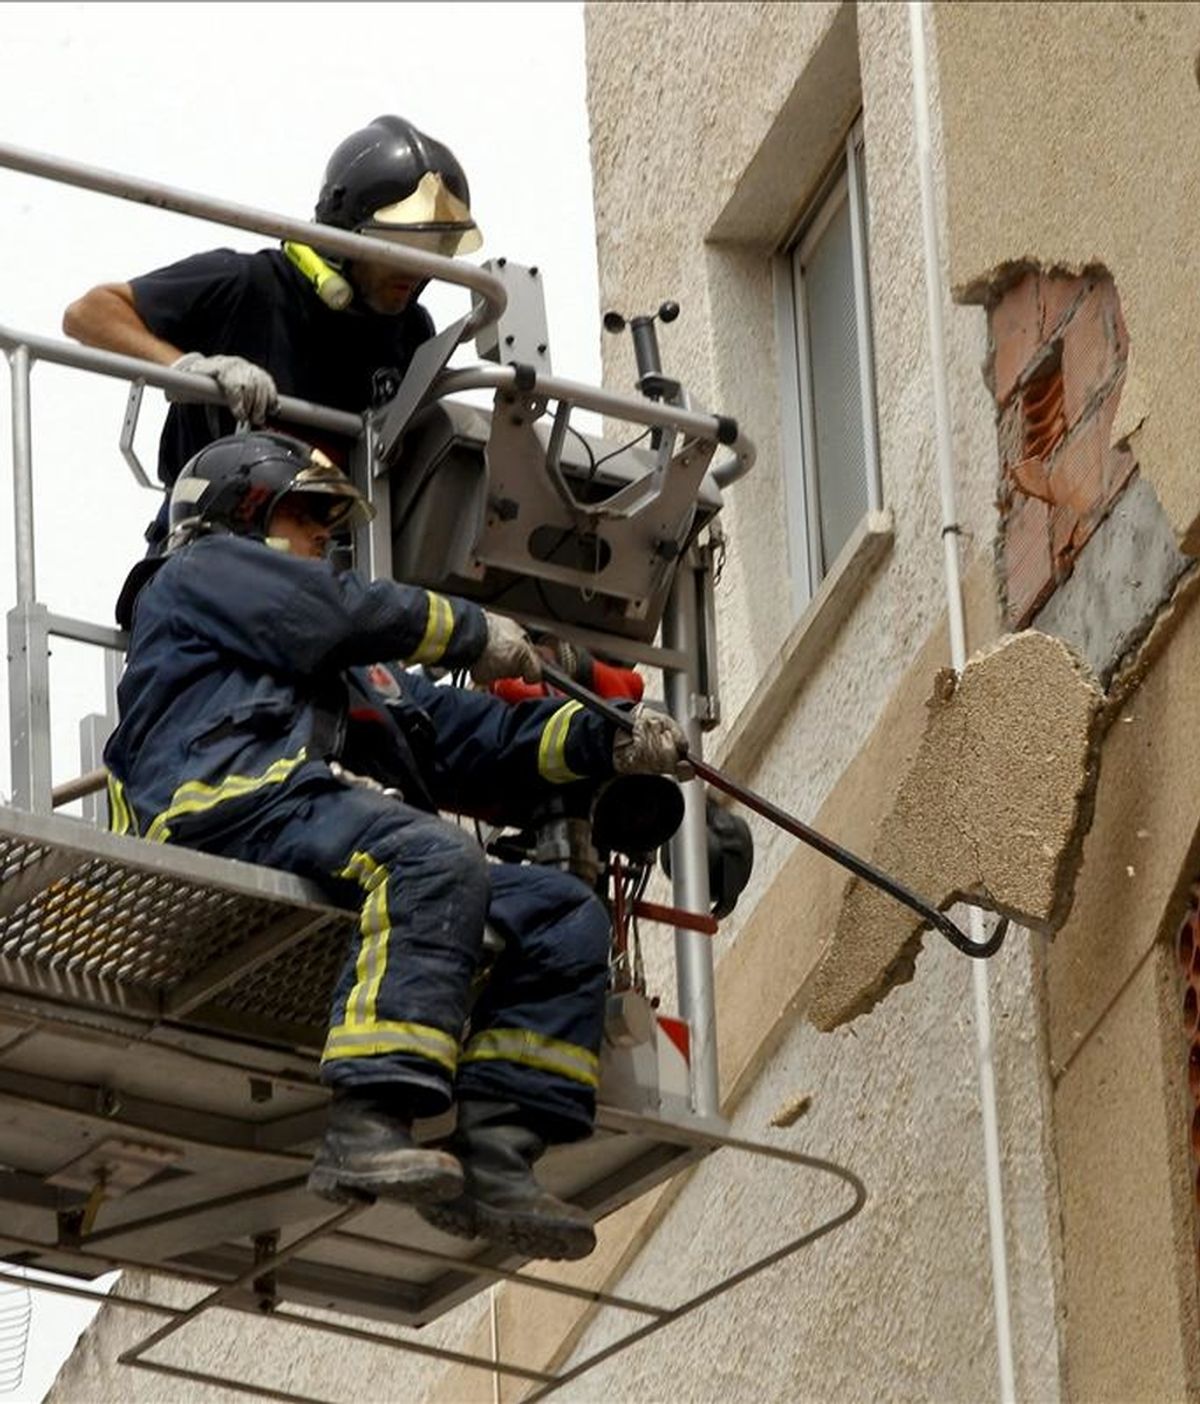 Dos bomberos trabajando en un edificio en la ciudad de Lorca, que trata de recuperar la normalidad después de los dos terremotos que asolaron el pasado miércoles la ciudad. EFE